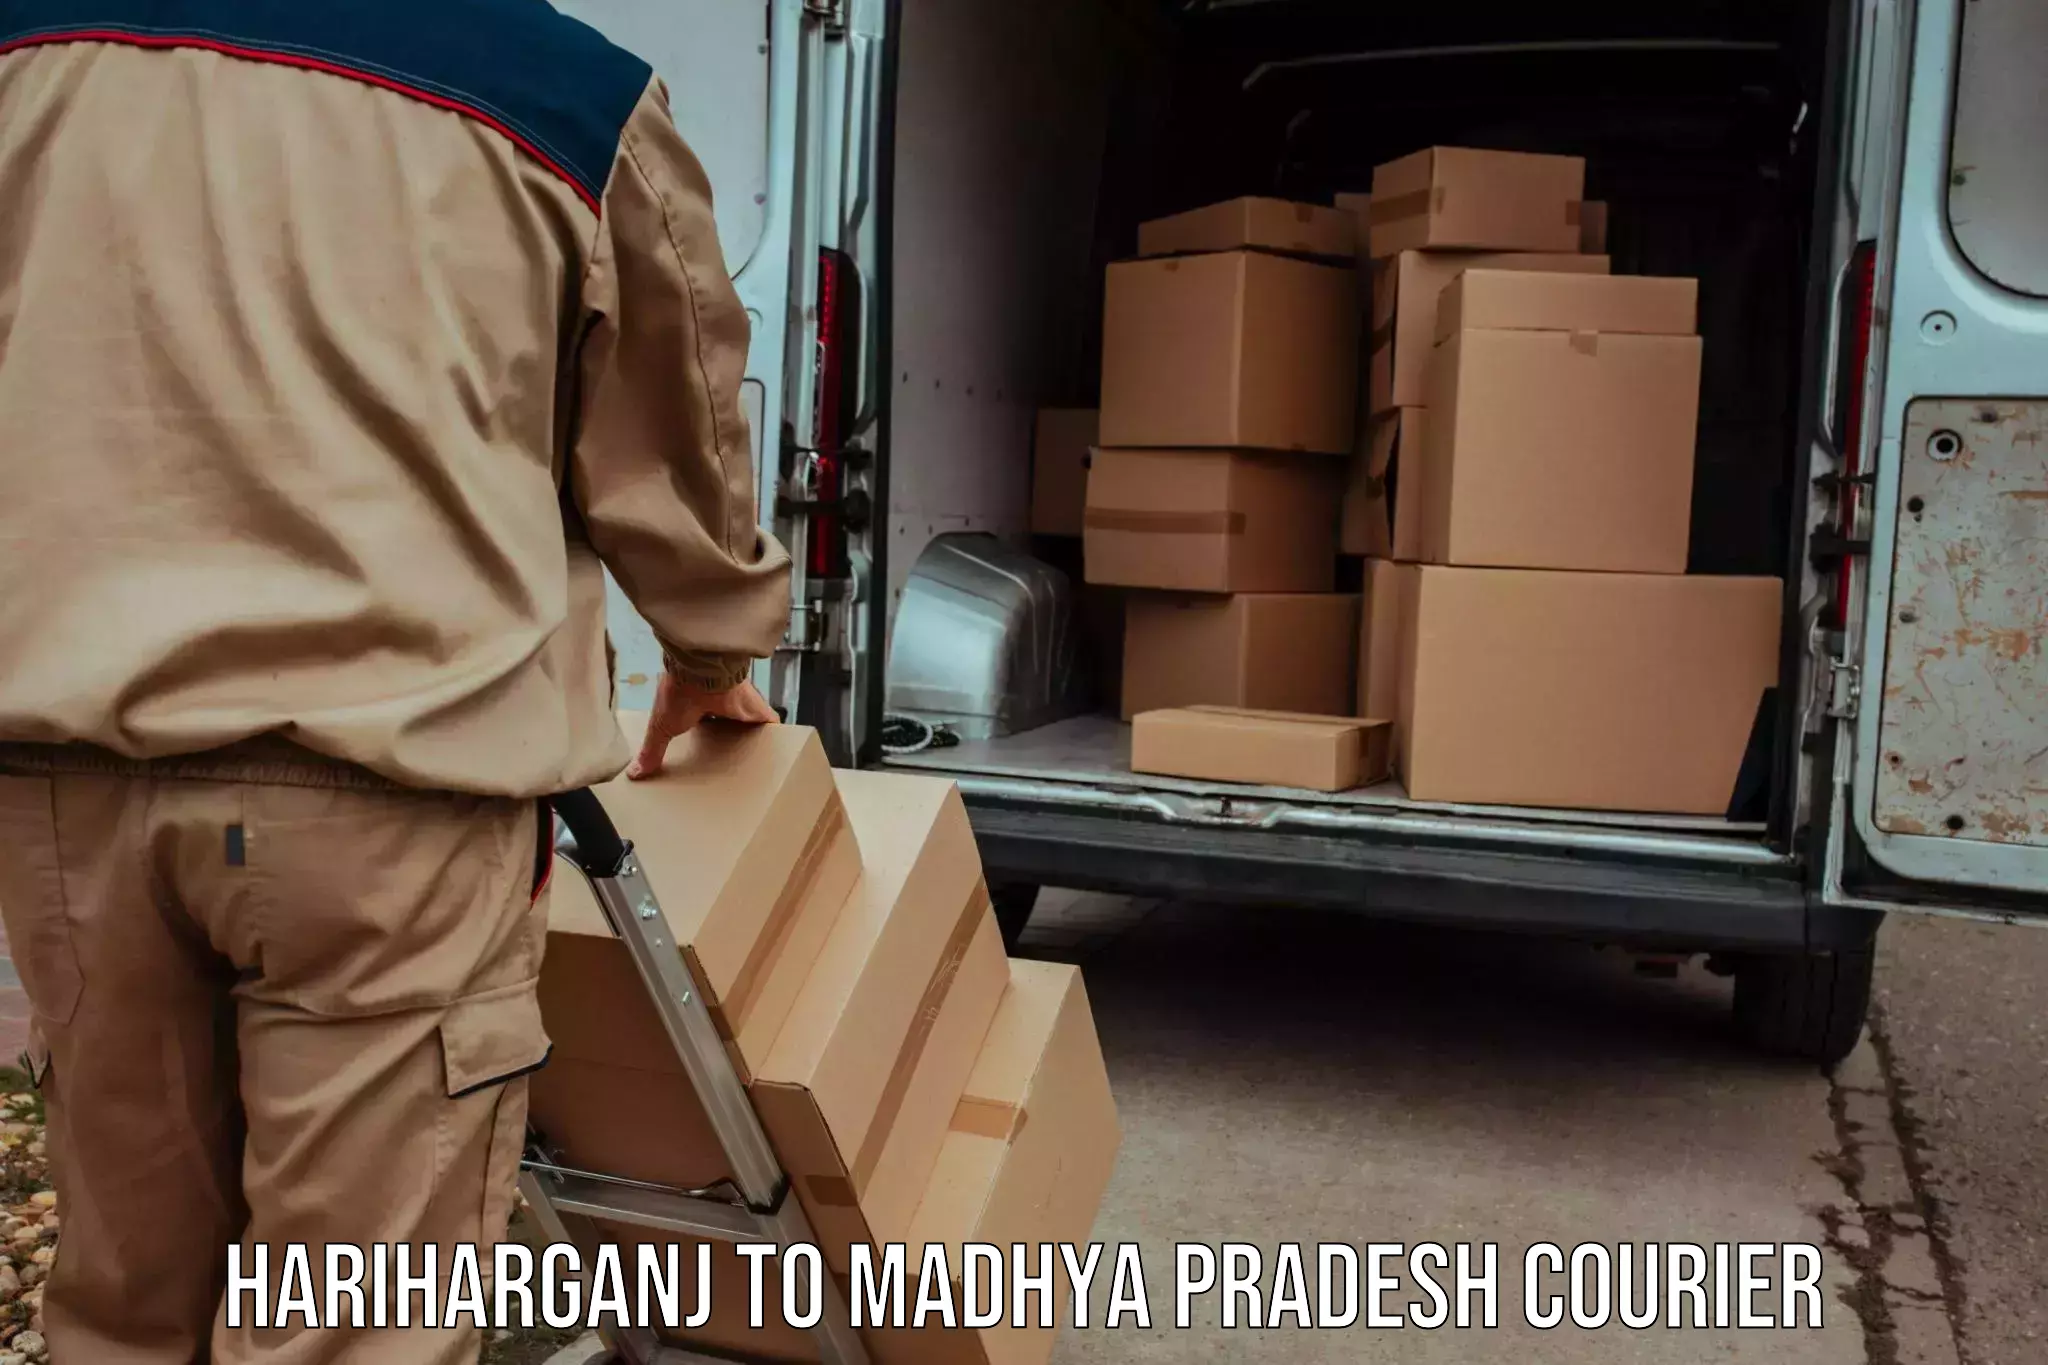 Flexible delivery schedules in Hariharganj to Datia